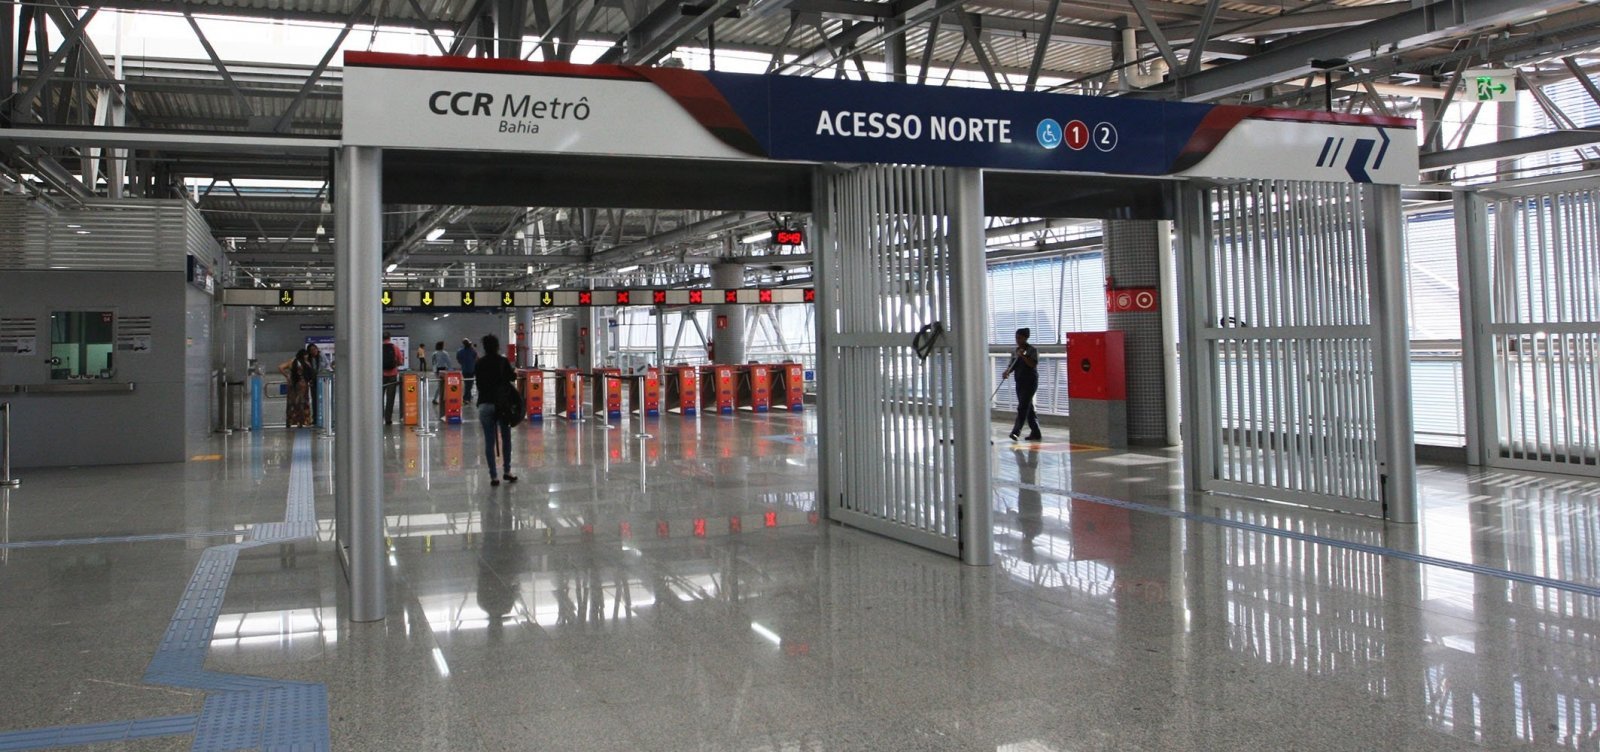 Metrô de Salvador funciona normalmente em dia de greve geral, diz CCR